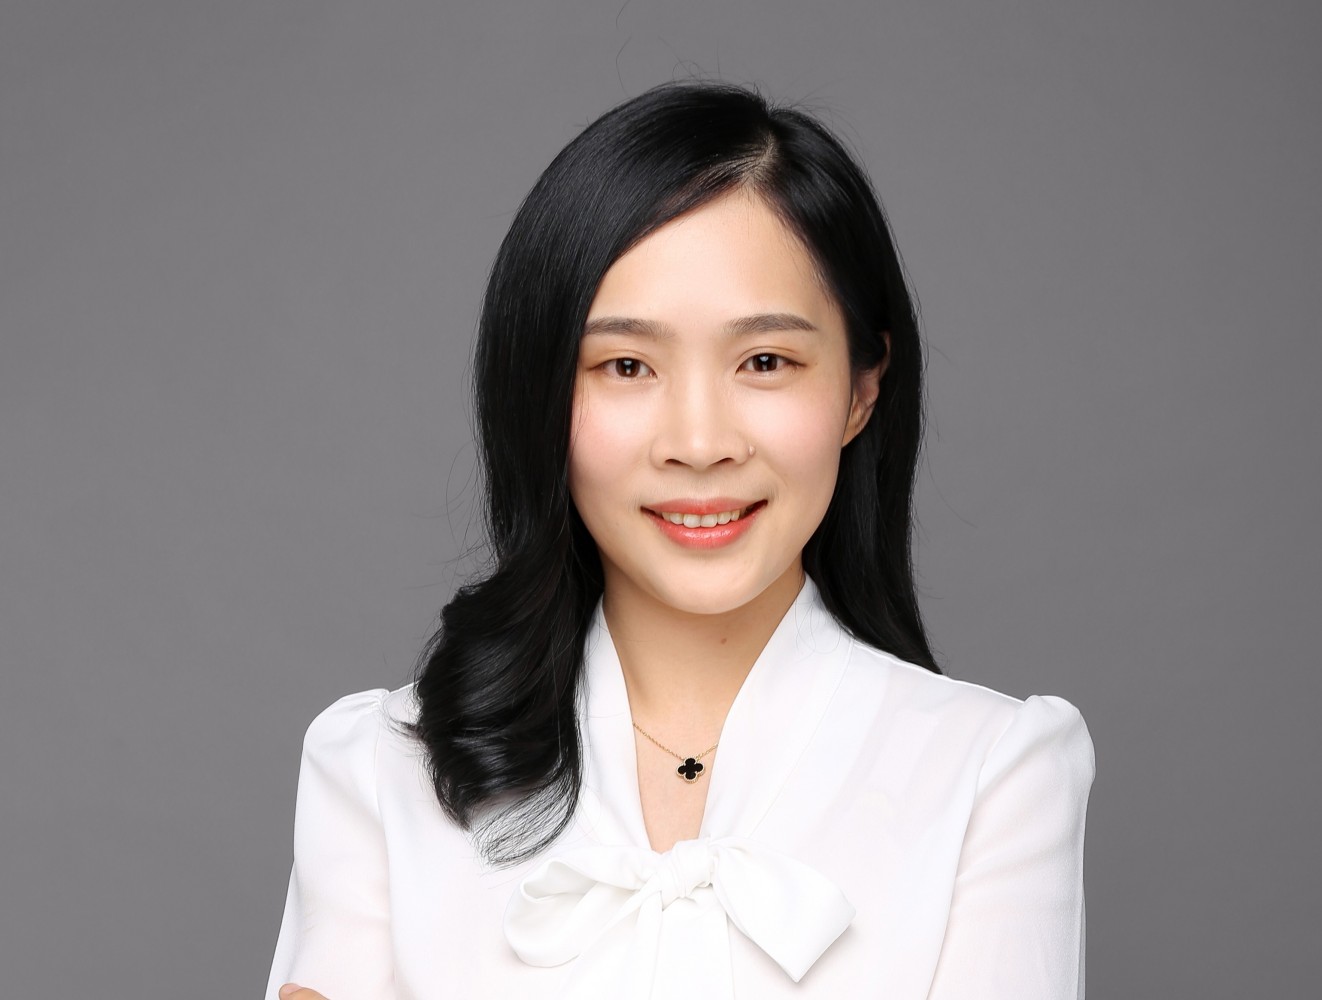 Jie Zhang